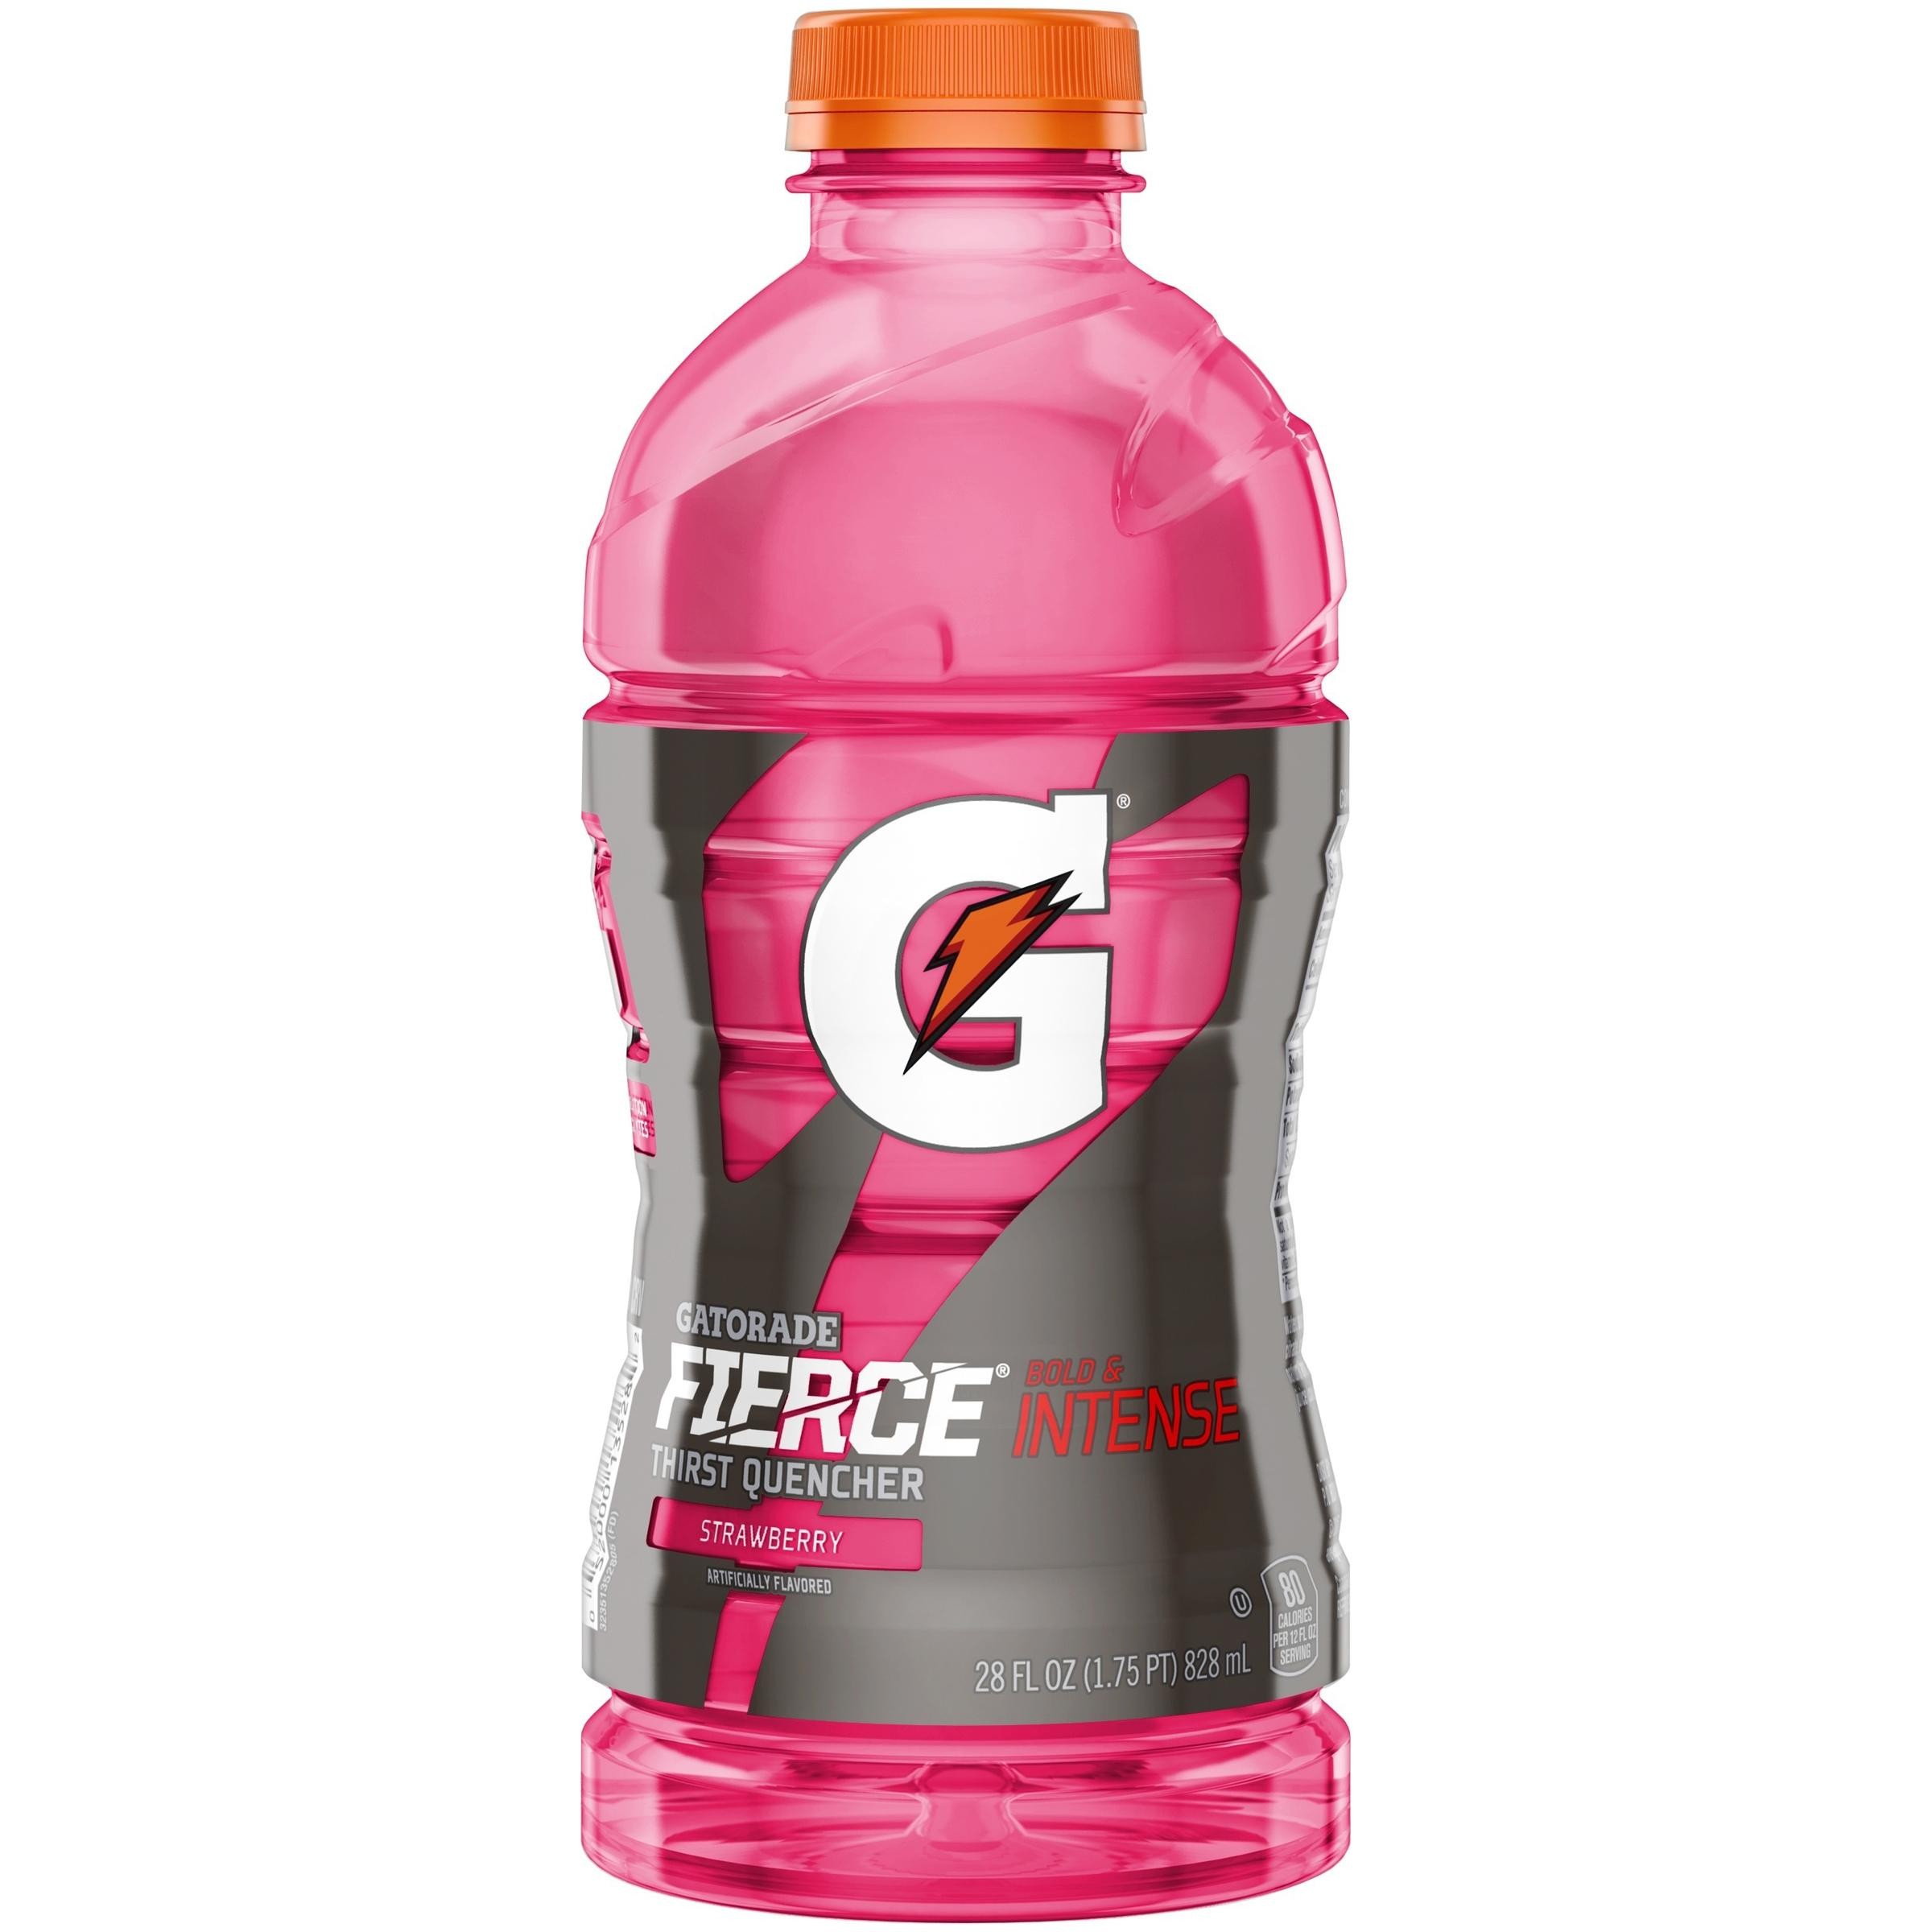 Gatorade Fierce Intense Thirst Quencher Strawberry Sports Drink, 28 Fl. Oz.